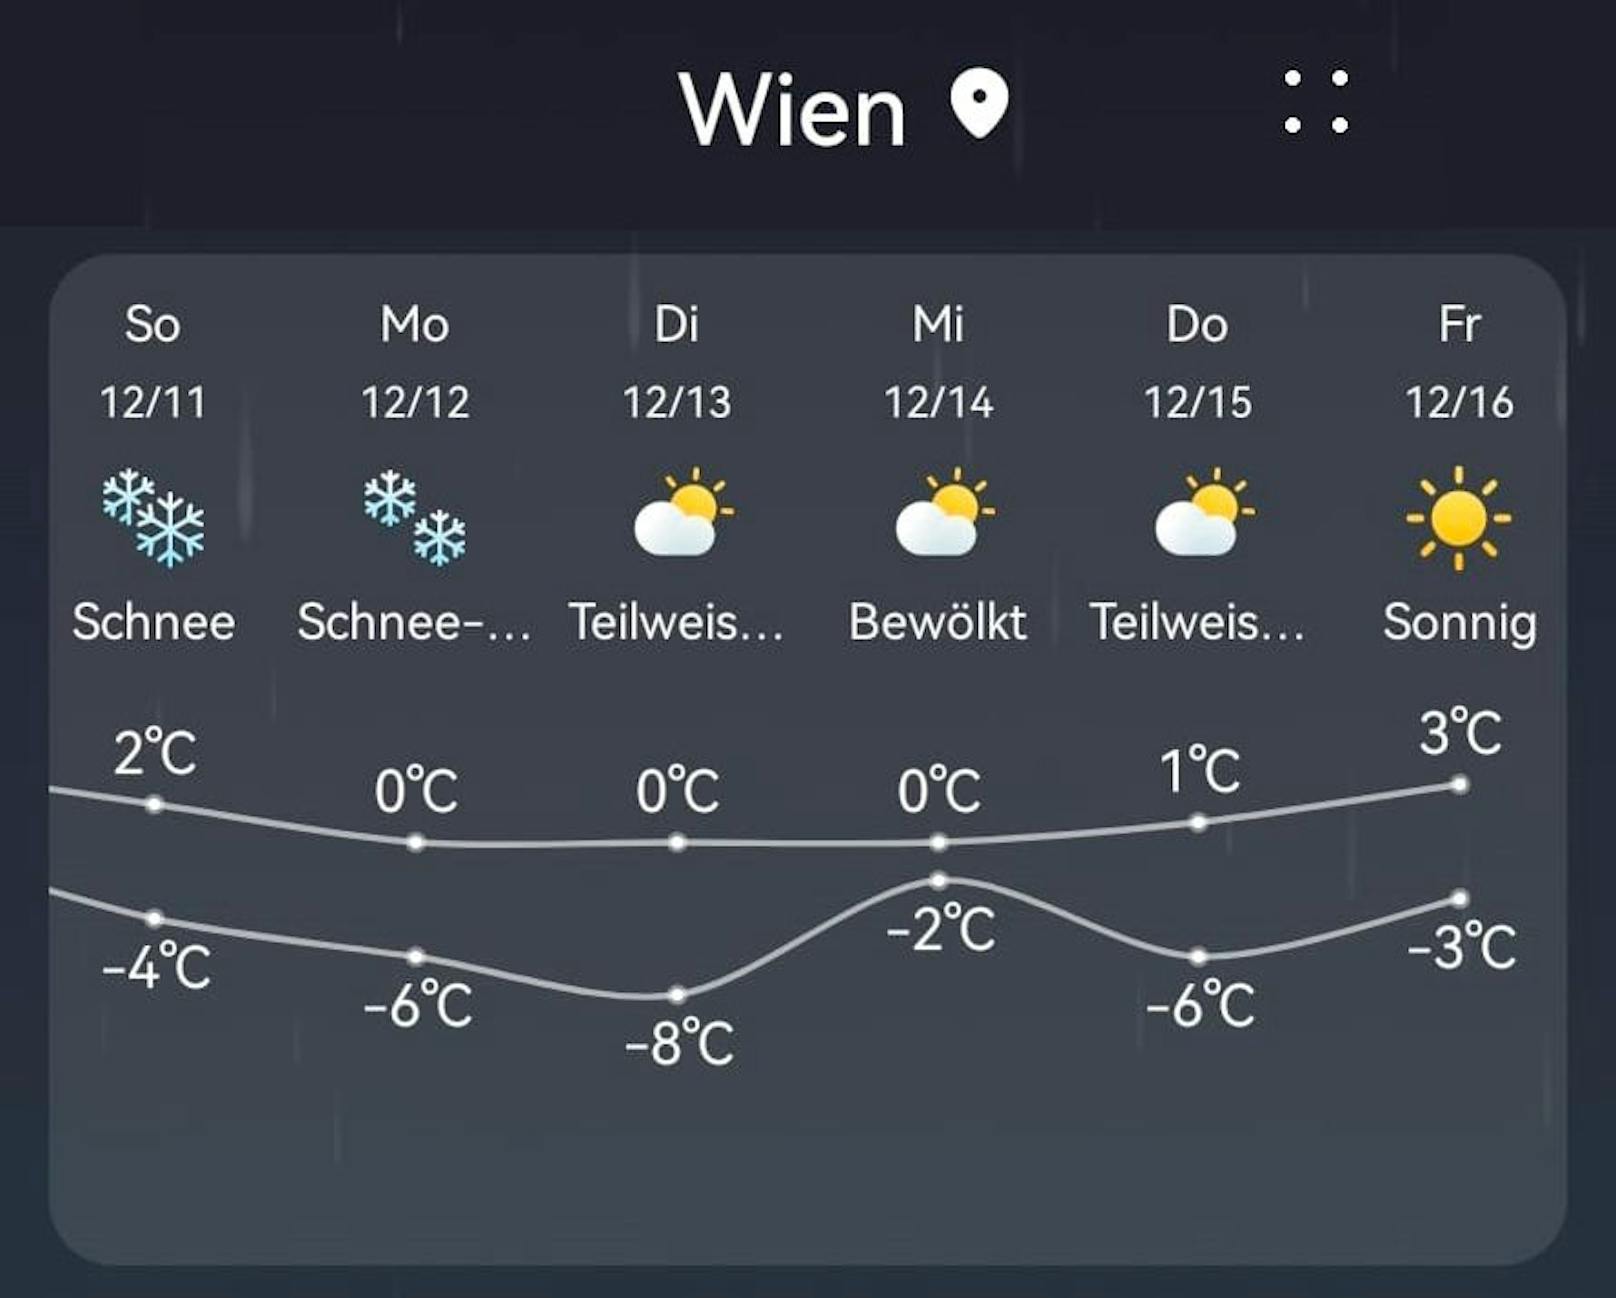 So sieht die langfriste Wetter-Prognose für Wien auf einem Android-Handy aus.